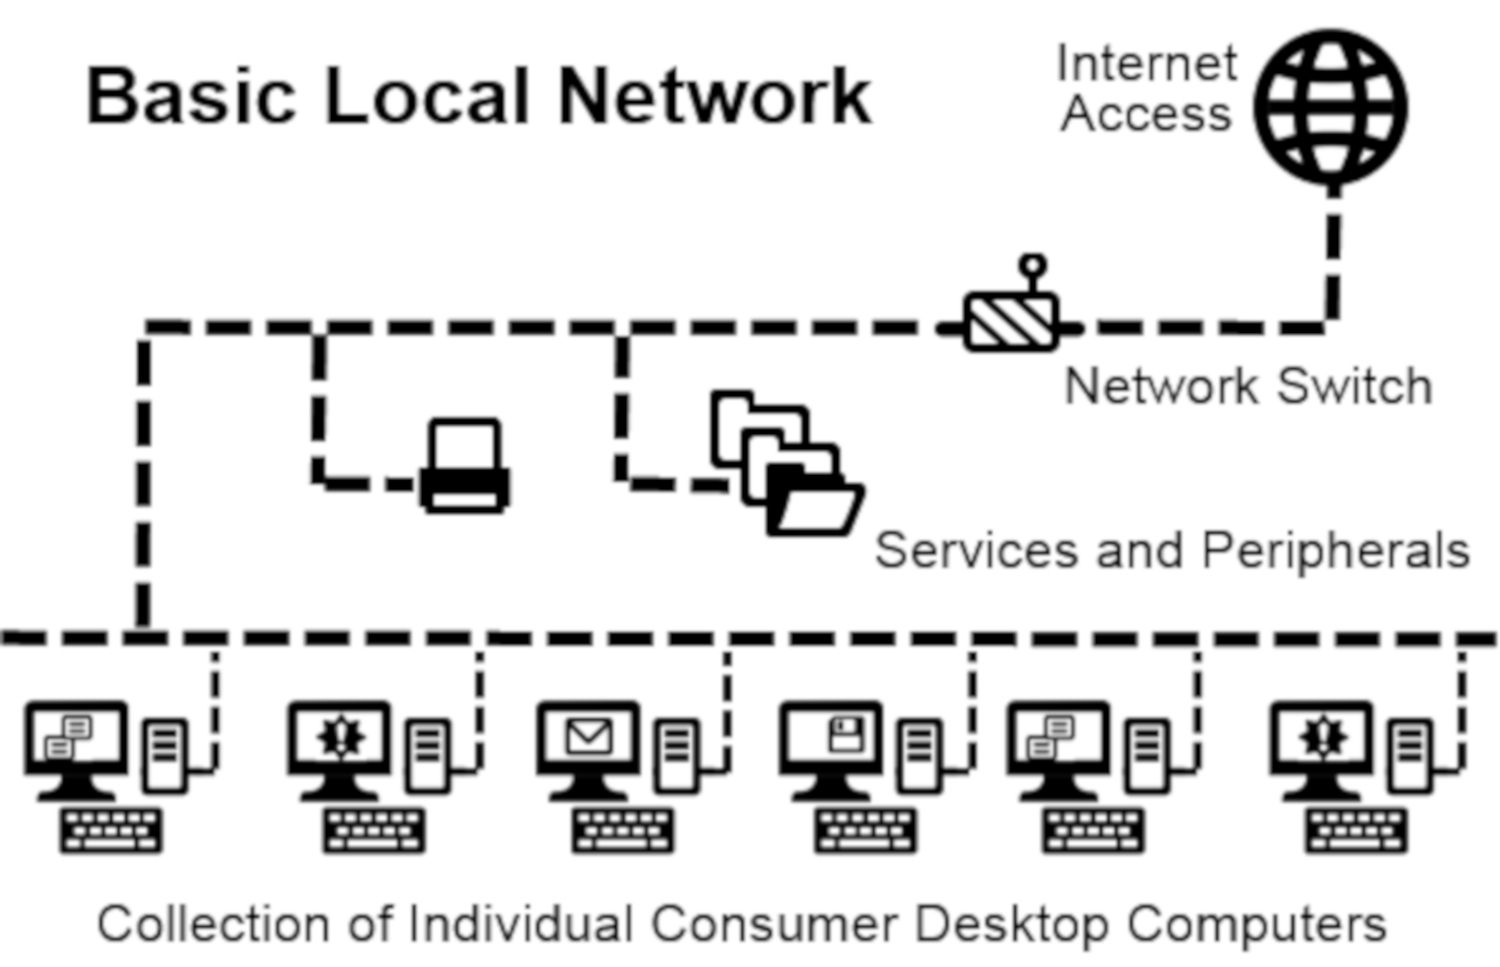 Diagrama mostrando a topologia básica de uma rede local